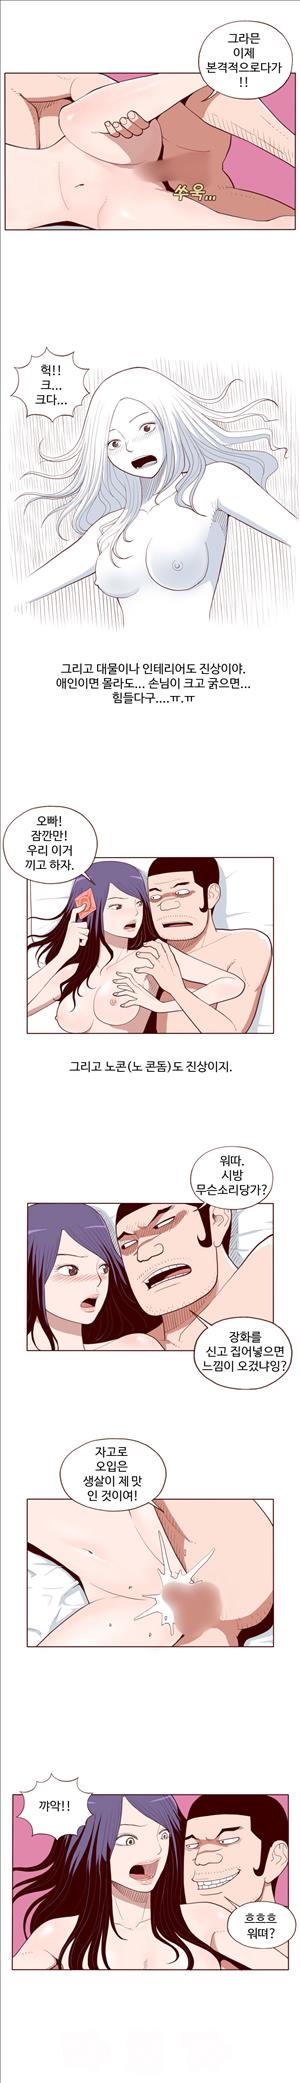 미색 - 썰만화 시즌4 51화 - 오피녀의 비밀(중)_1